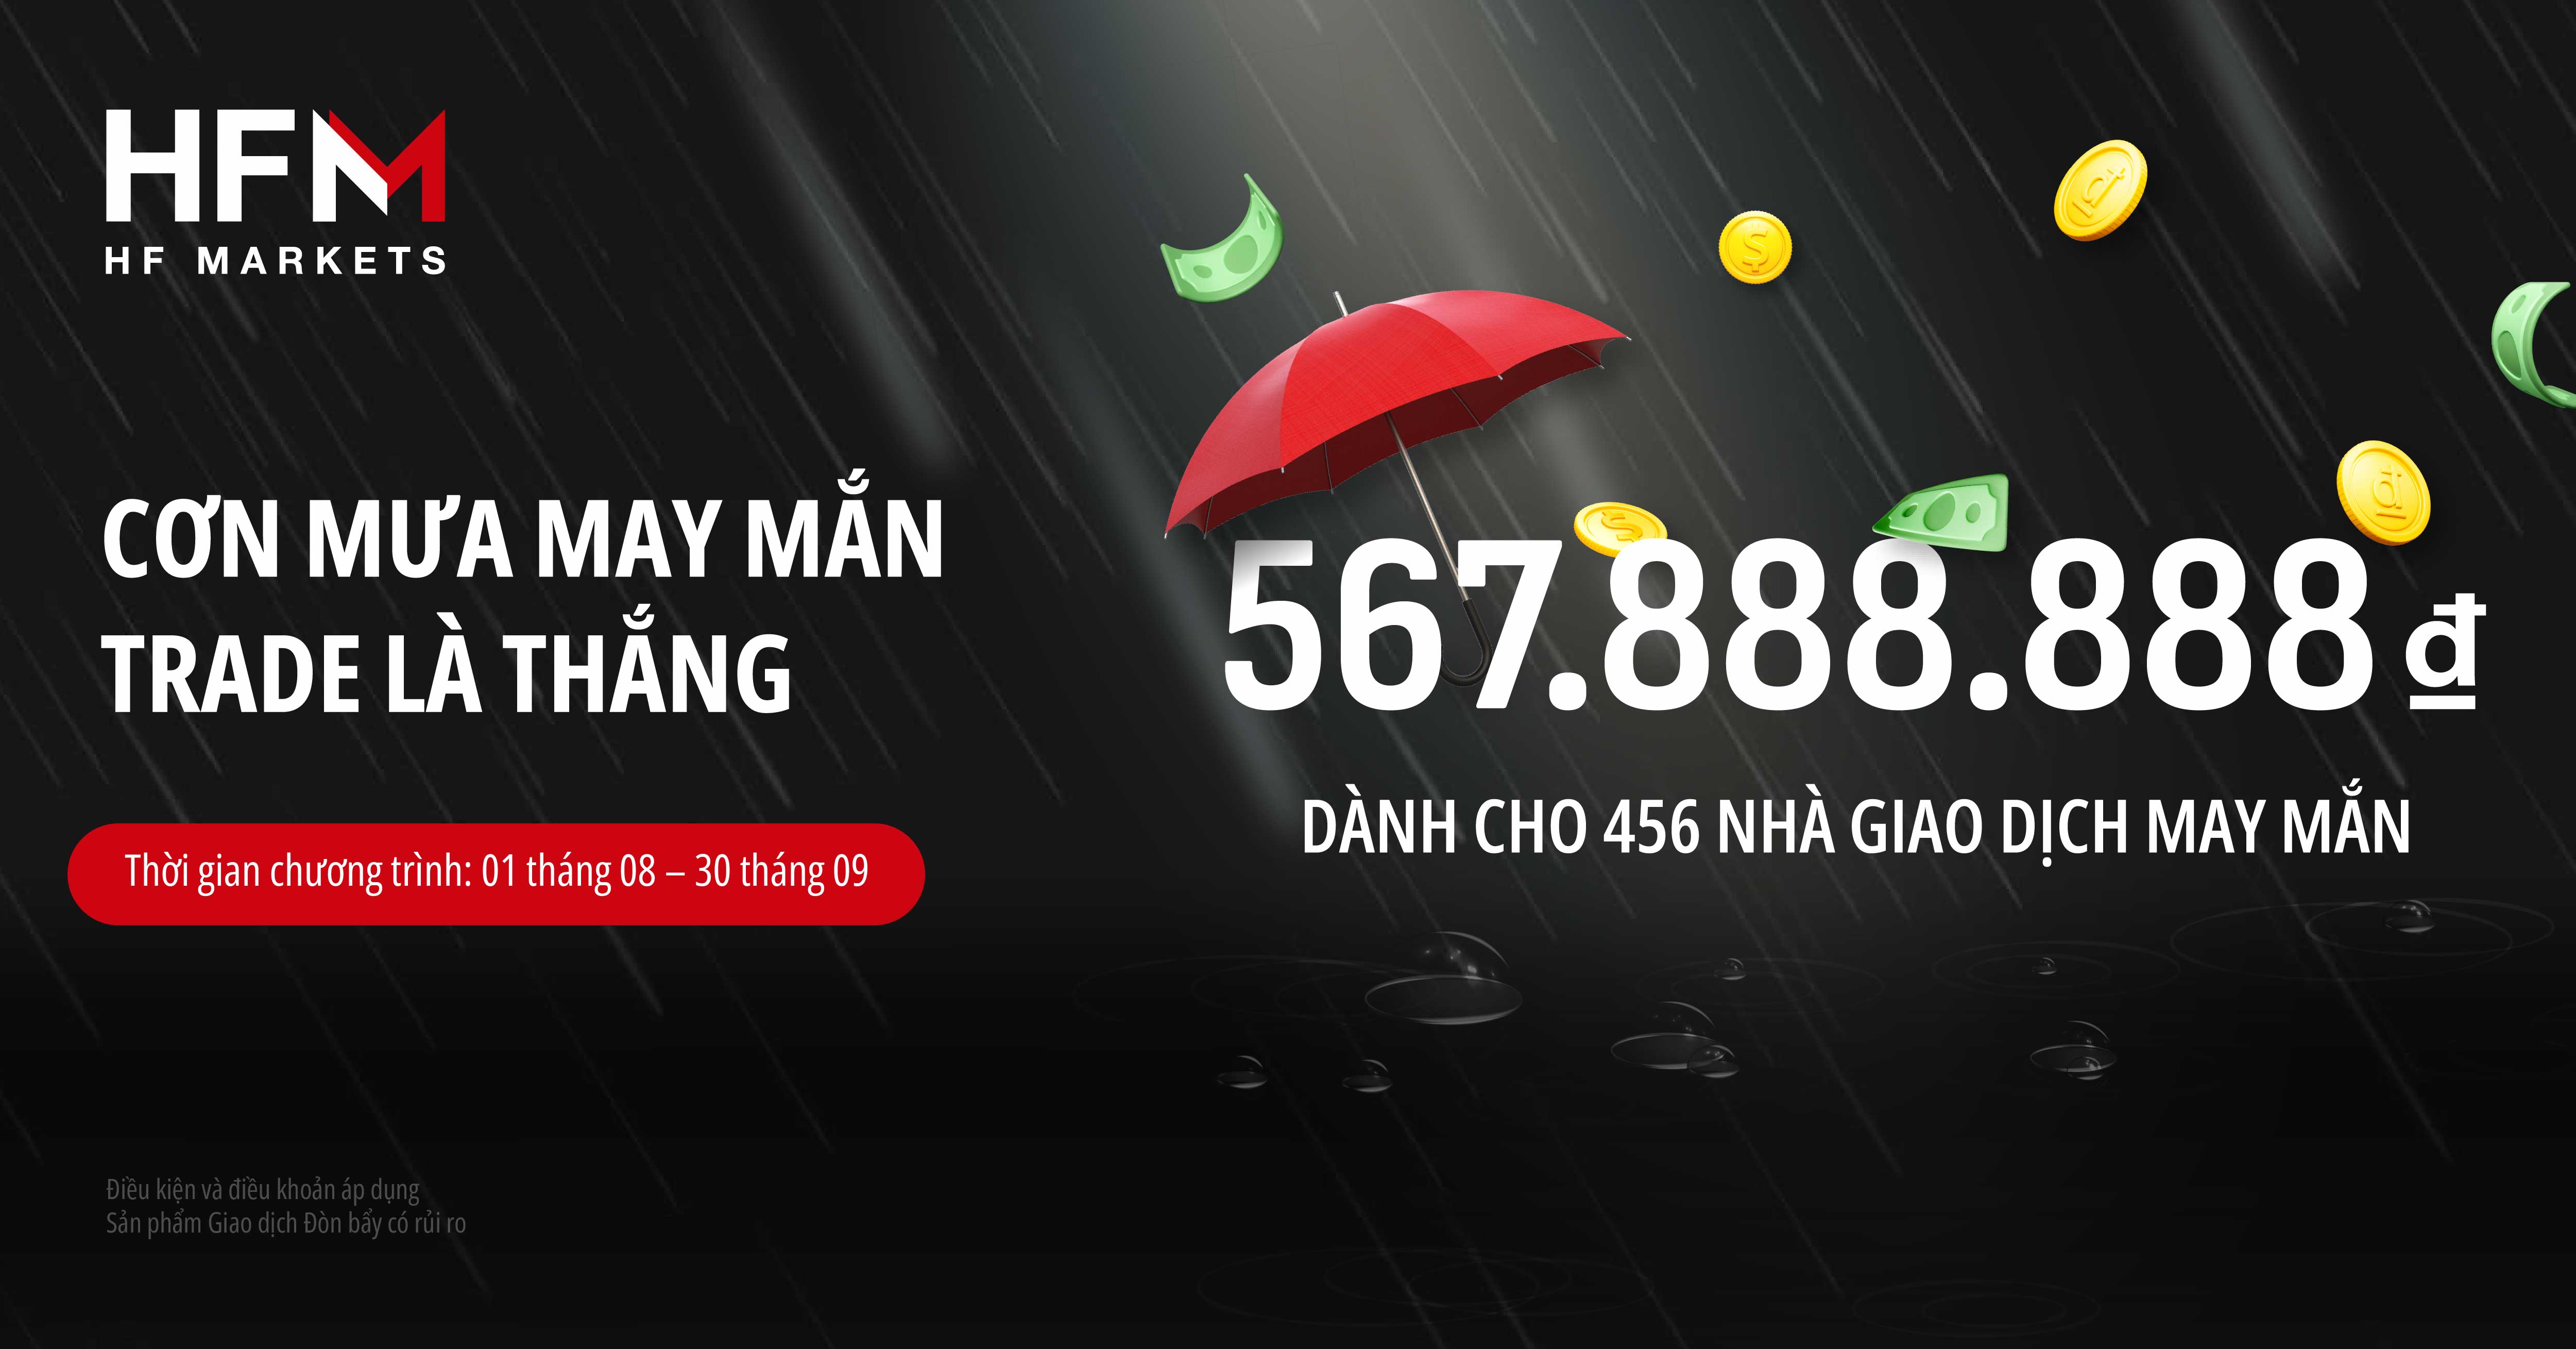 Cơn mưa may mắn, trade là thắng với tổng giải thưởng 567,888,888 VNĐ